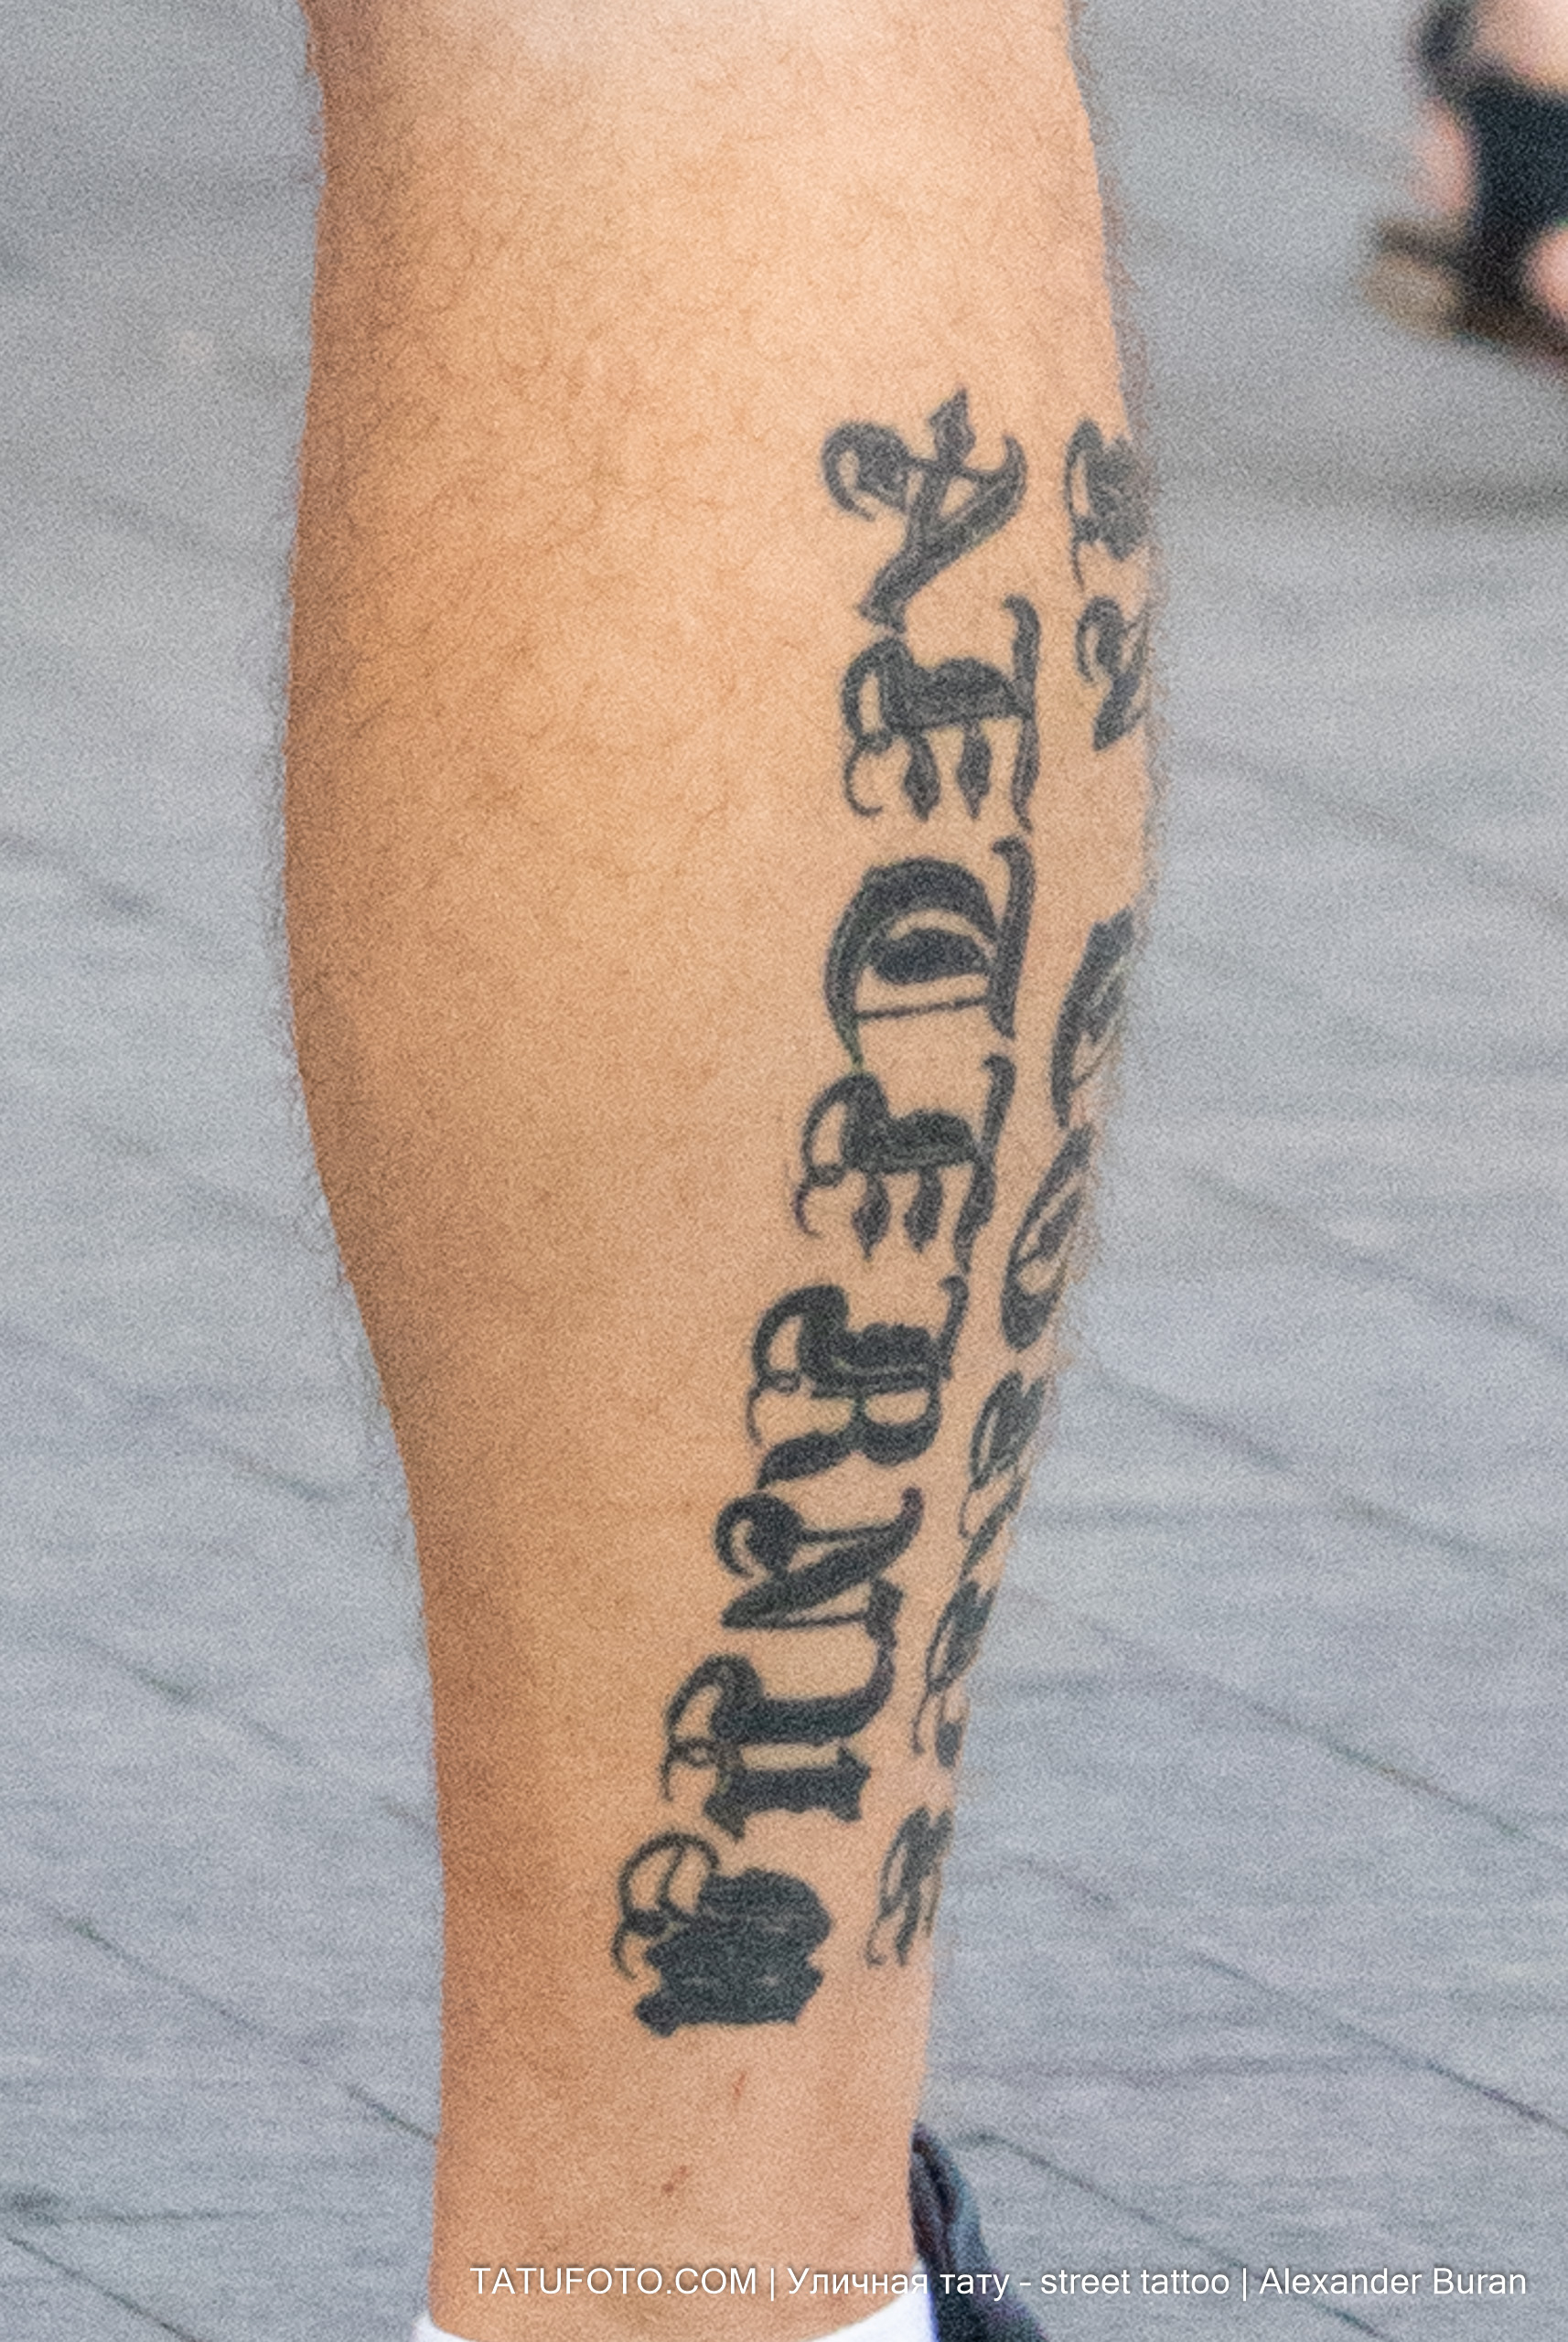 Тату надпись большими буквами внизу правой ноги мужчины 2 tatufoto.com - уличная тату